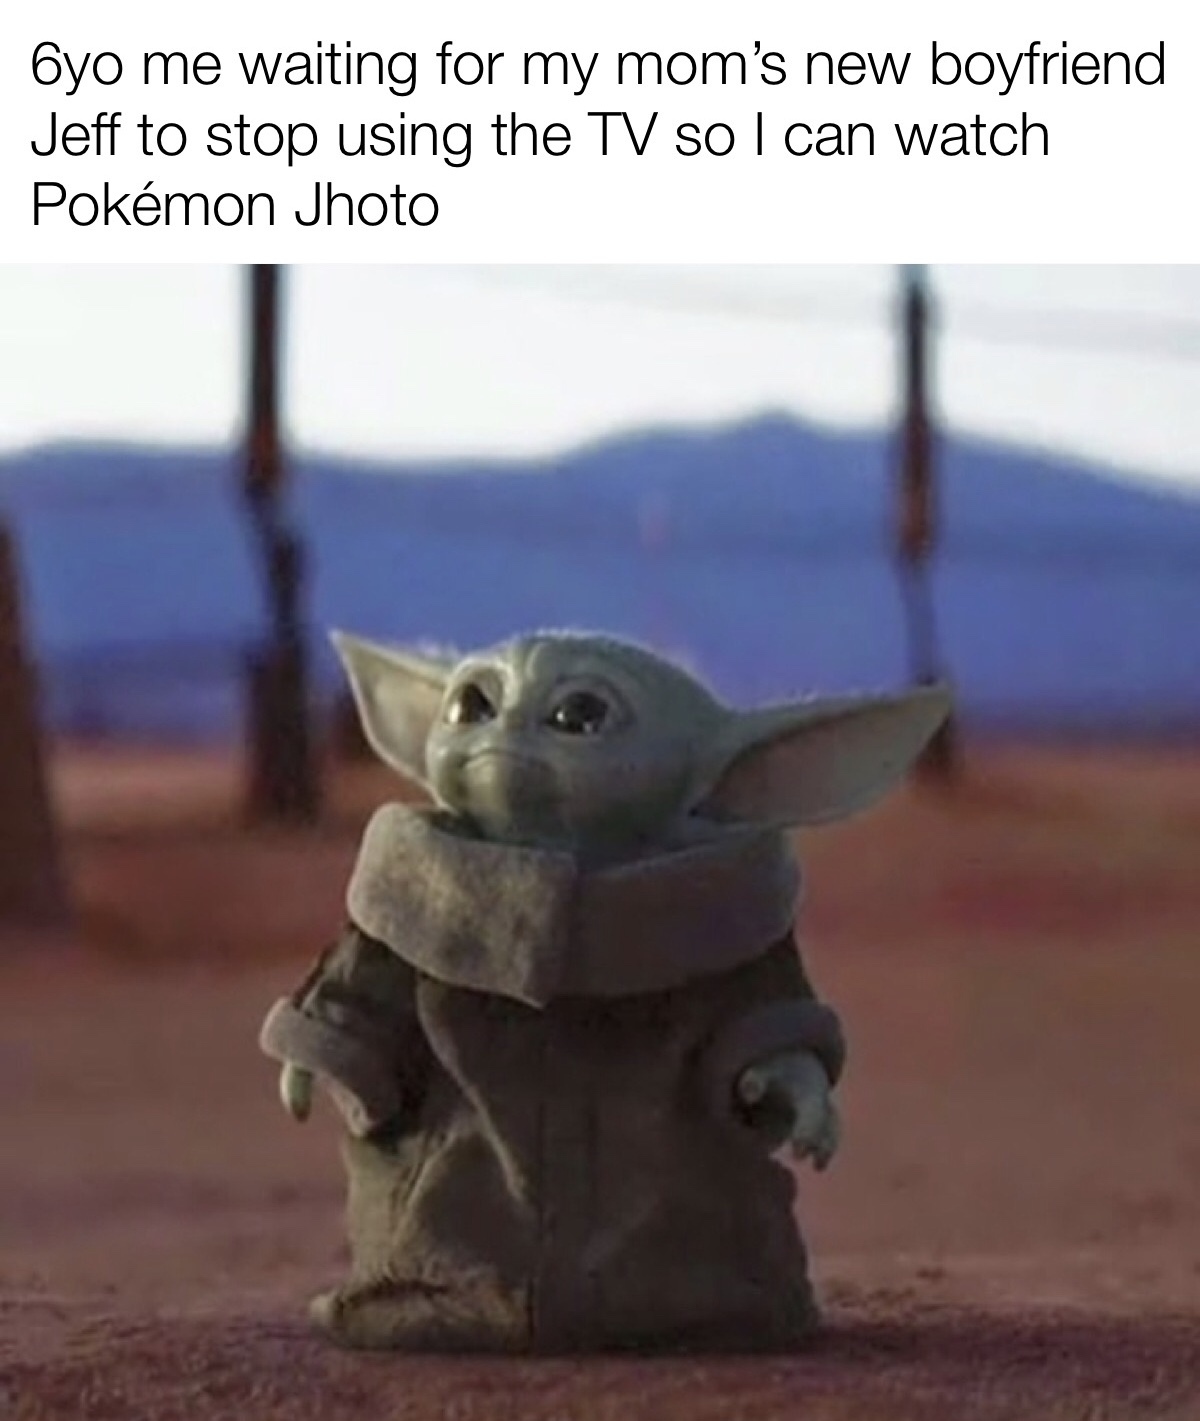 Jeff - meme